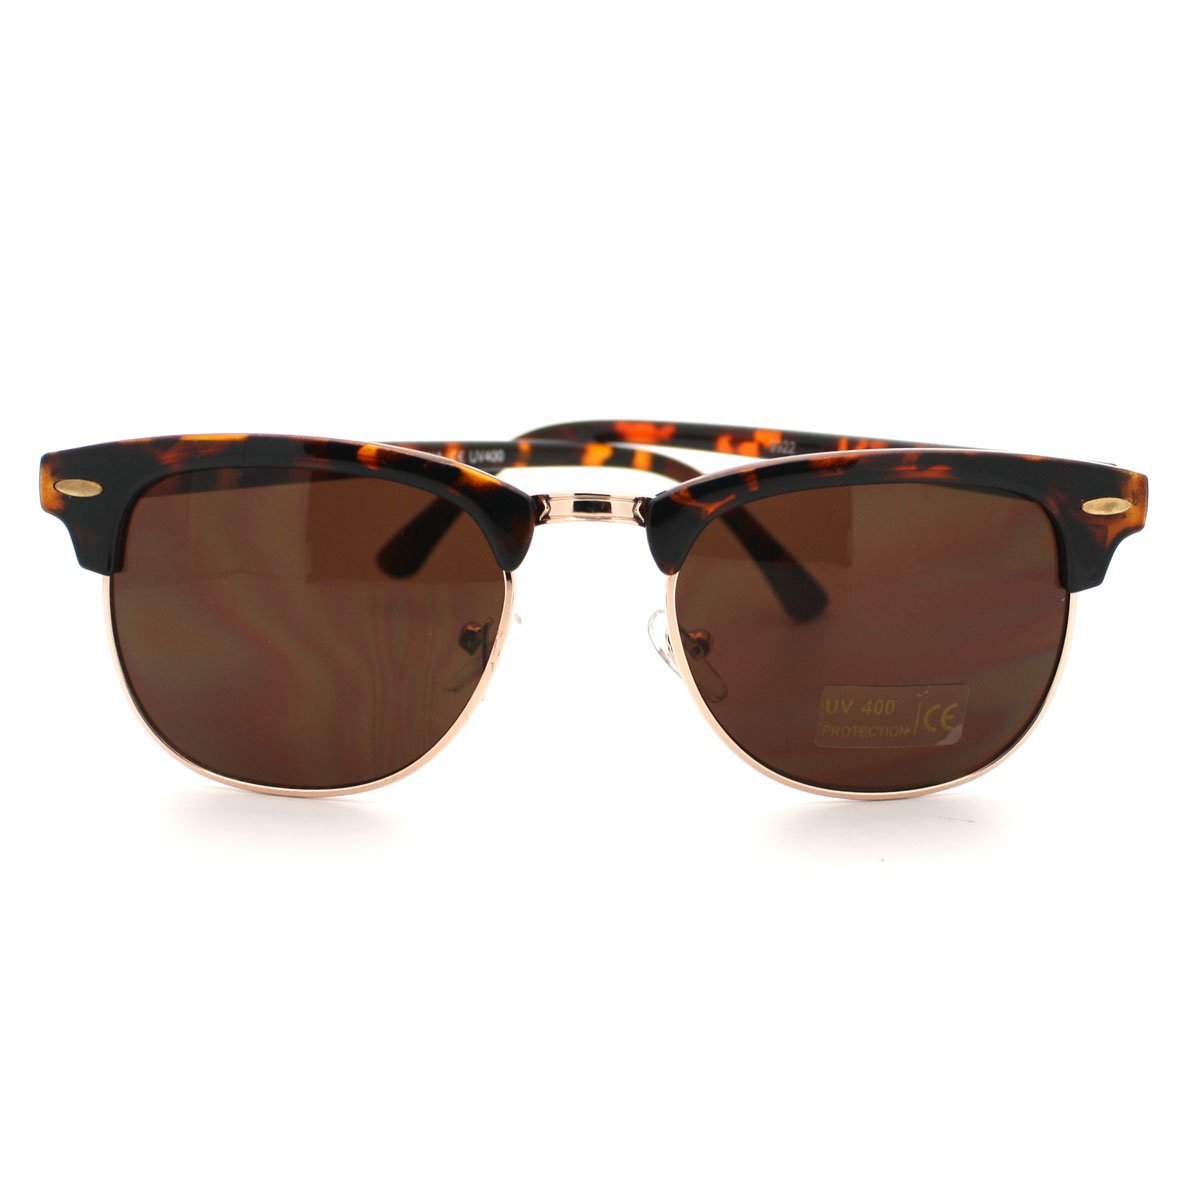 Retro Sunglasses Classic Semi Rimless Super Dark Lens (Demi/Brown)